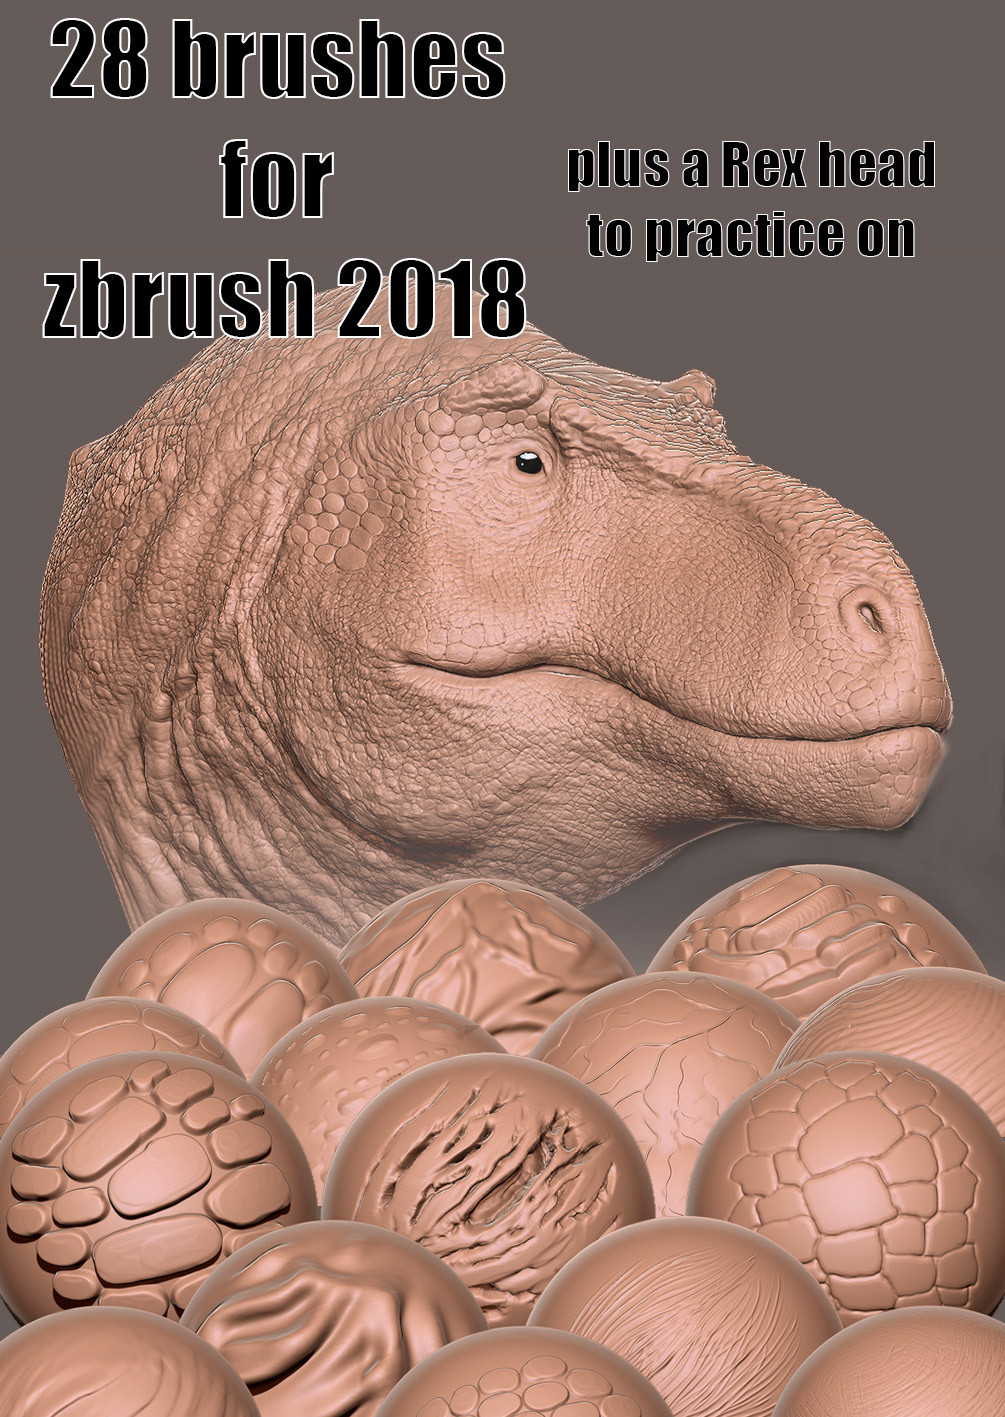 zbrush 2018 notes